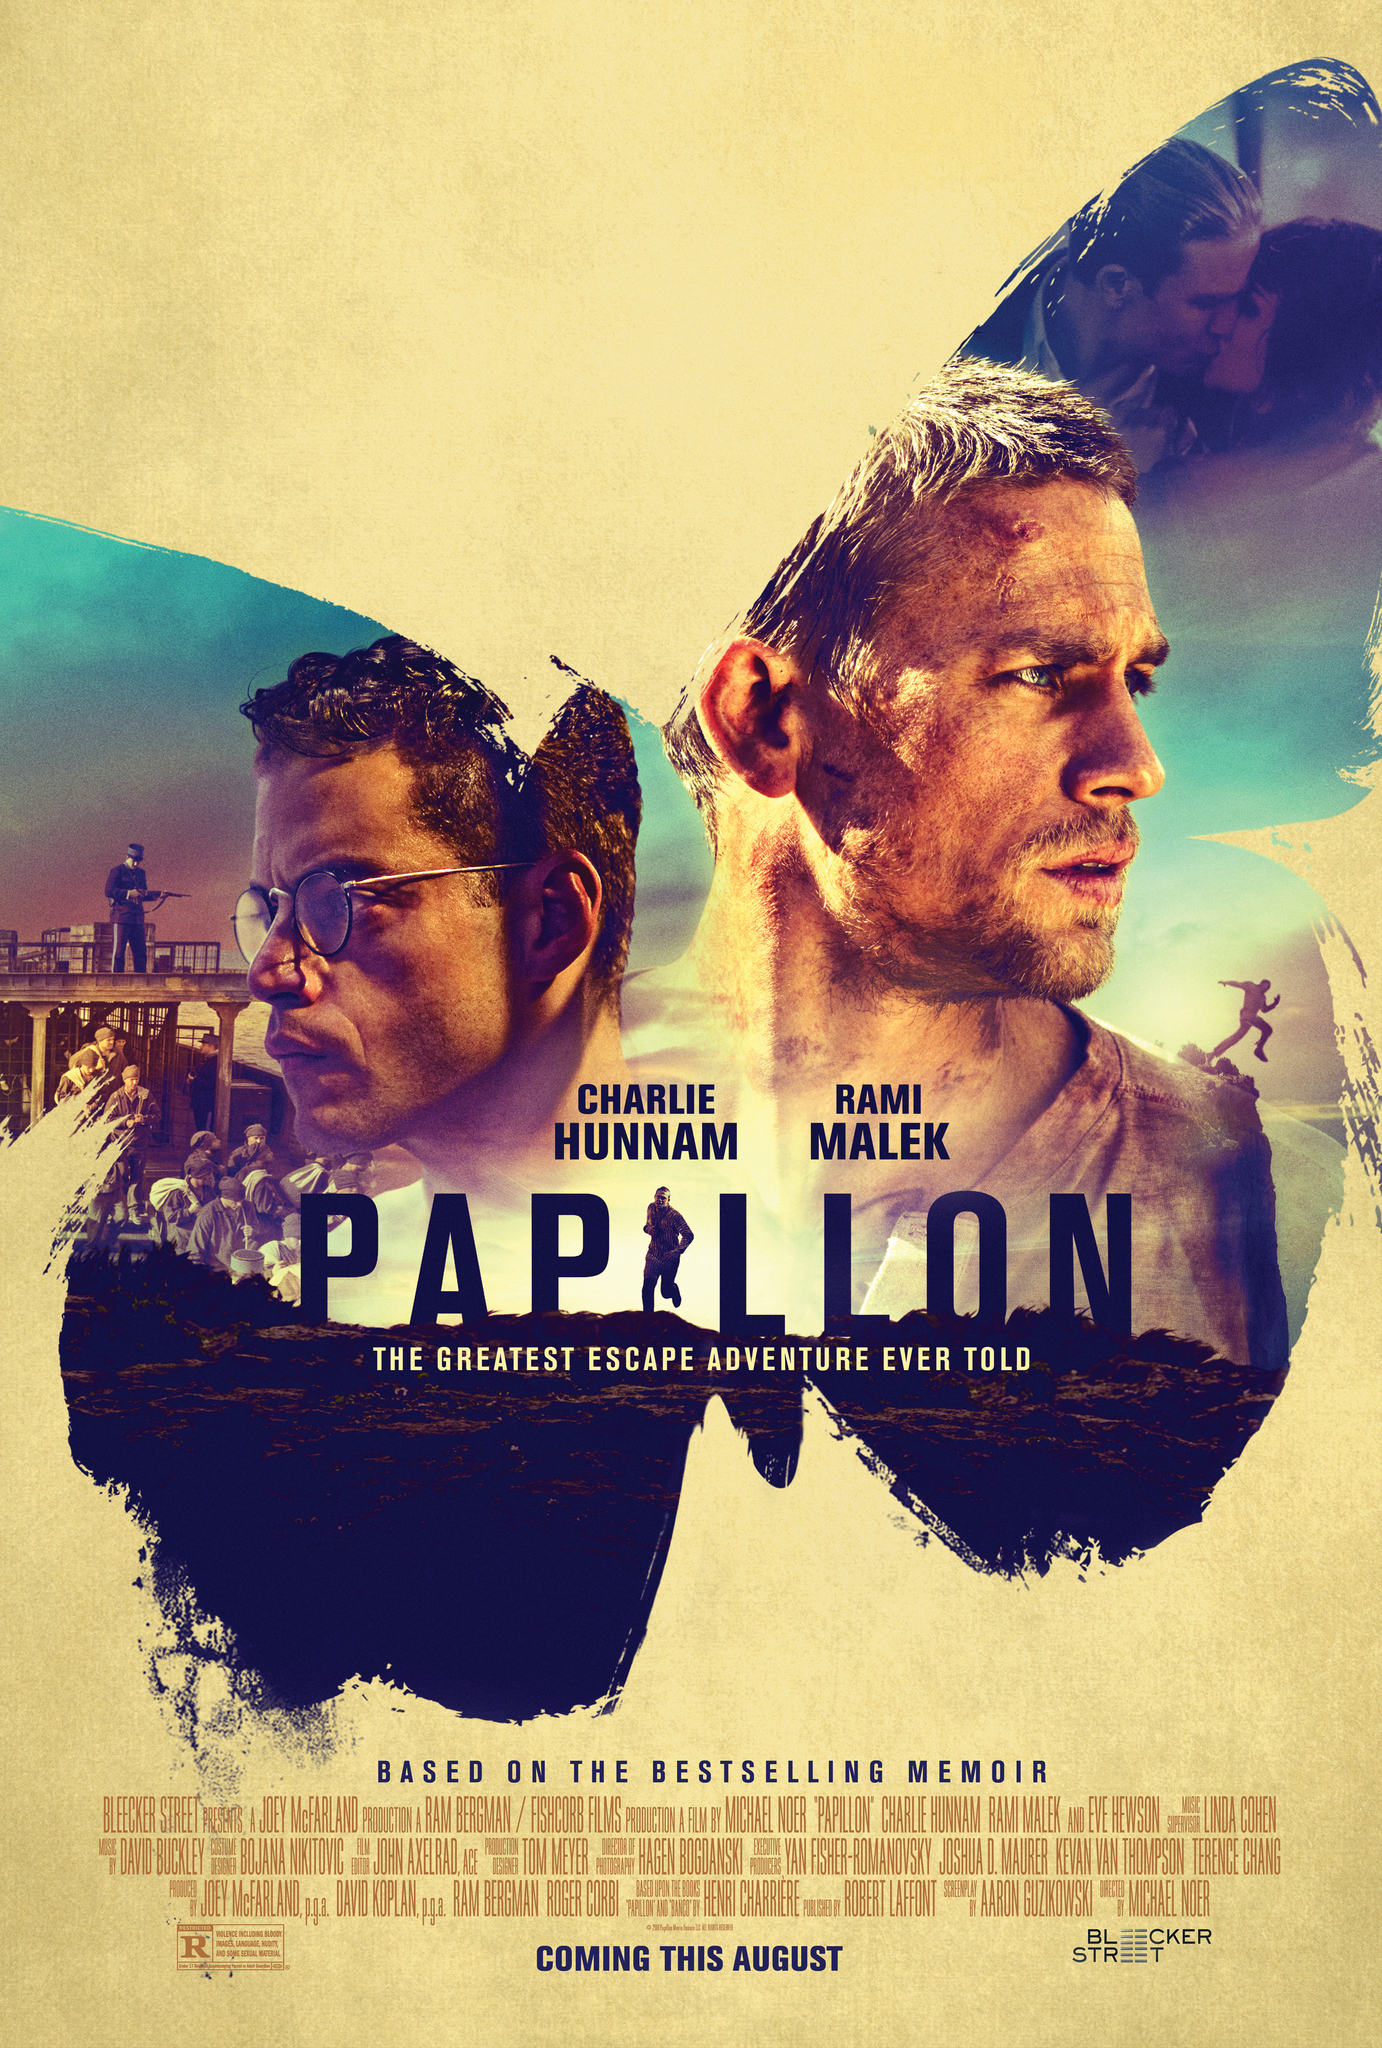 Papillon (2017) ปาปิยอง หนีตายแดนดิบ (Soundtrack Nosub) Charlie Hunnam